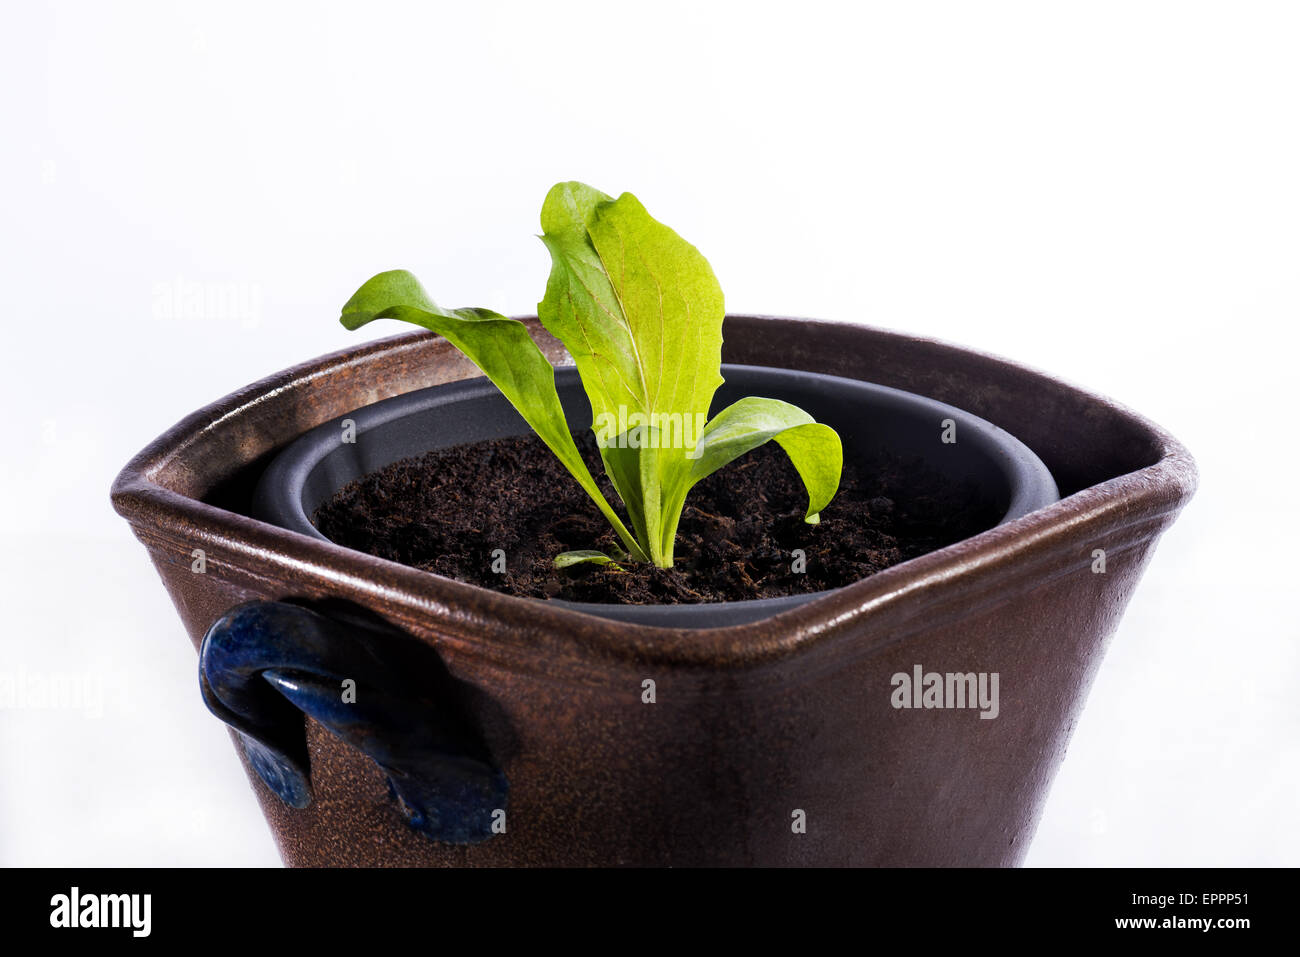 Salat-Pflanze in einen Topf geben, etwas kleines wachsen groß, neue grüne kleine Wachstumsschwäche beginnen beginnen Ausschnitt weißen Hintergrund Hintergrund exp Stockfoto